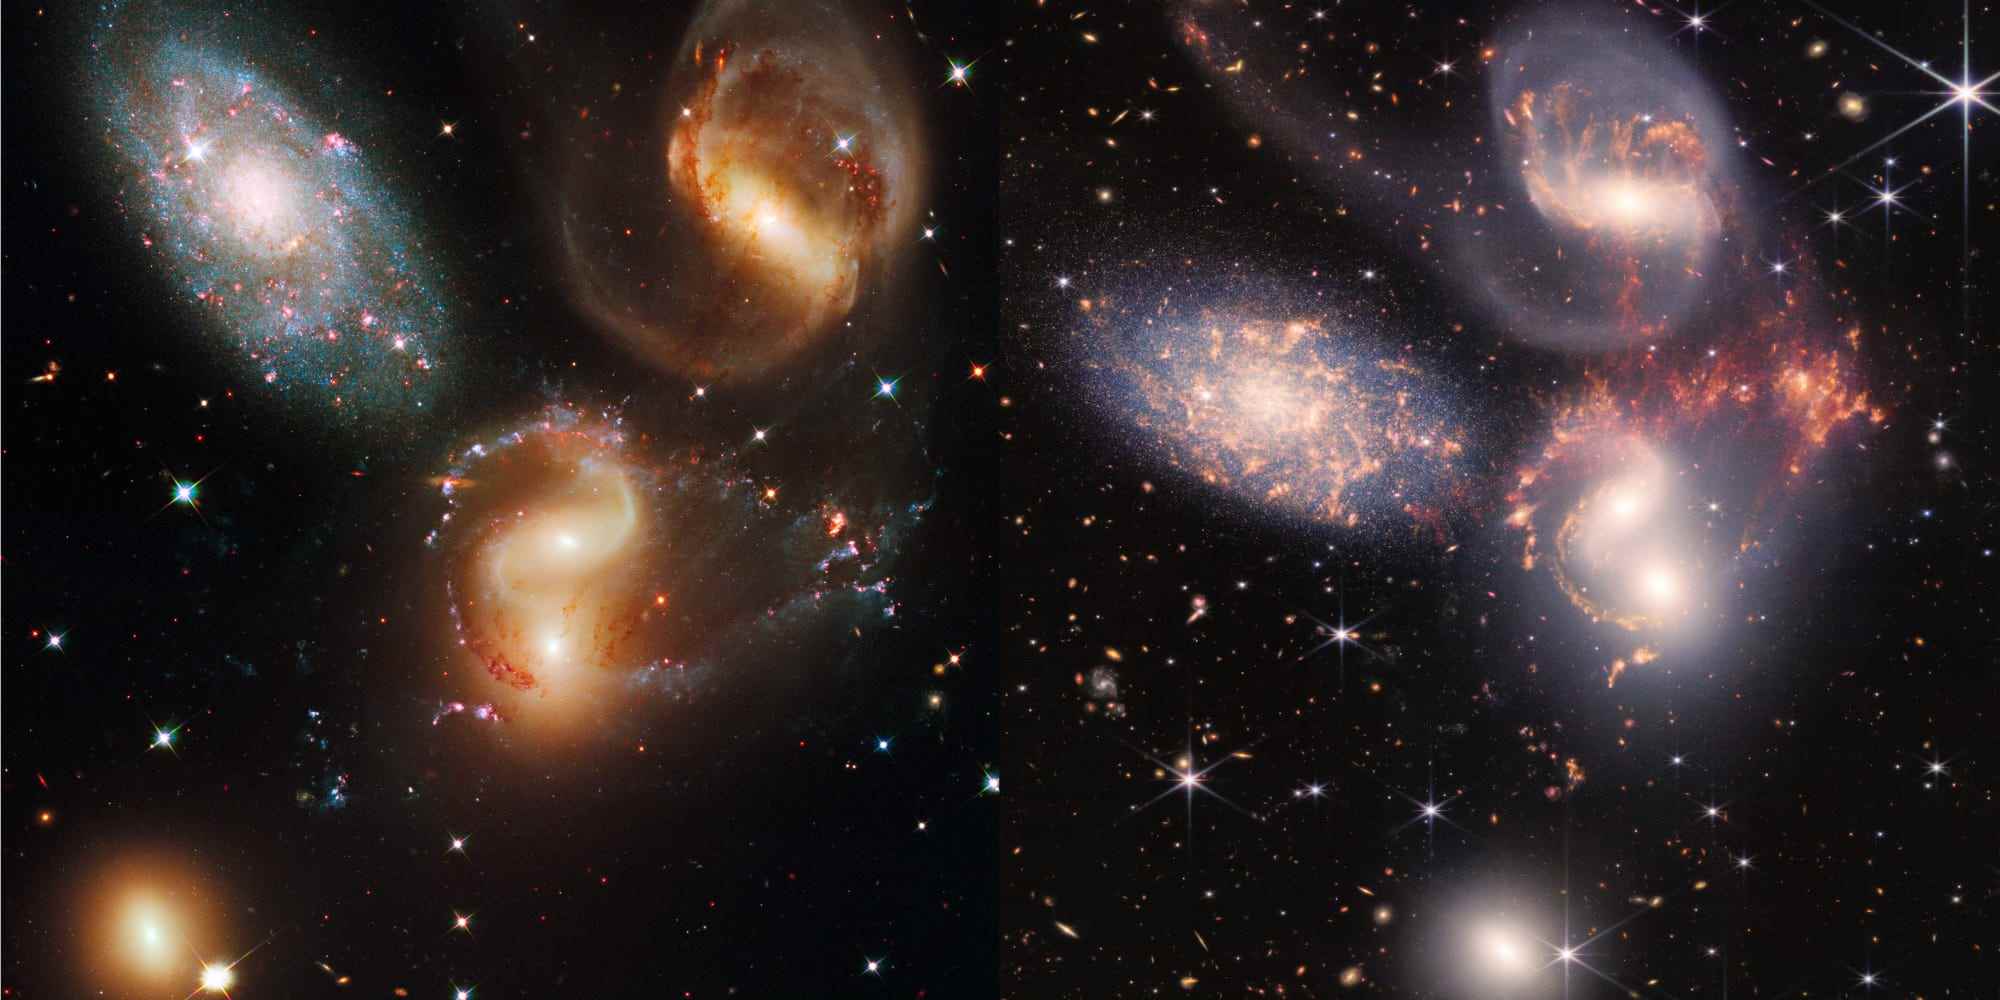 Cluster aus fünf Galaxien Stephans Quintett, aufgenommen von Hubble links und jwst rechts